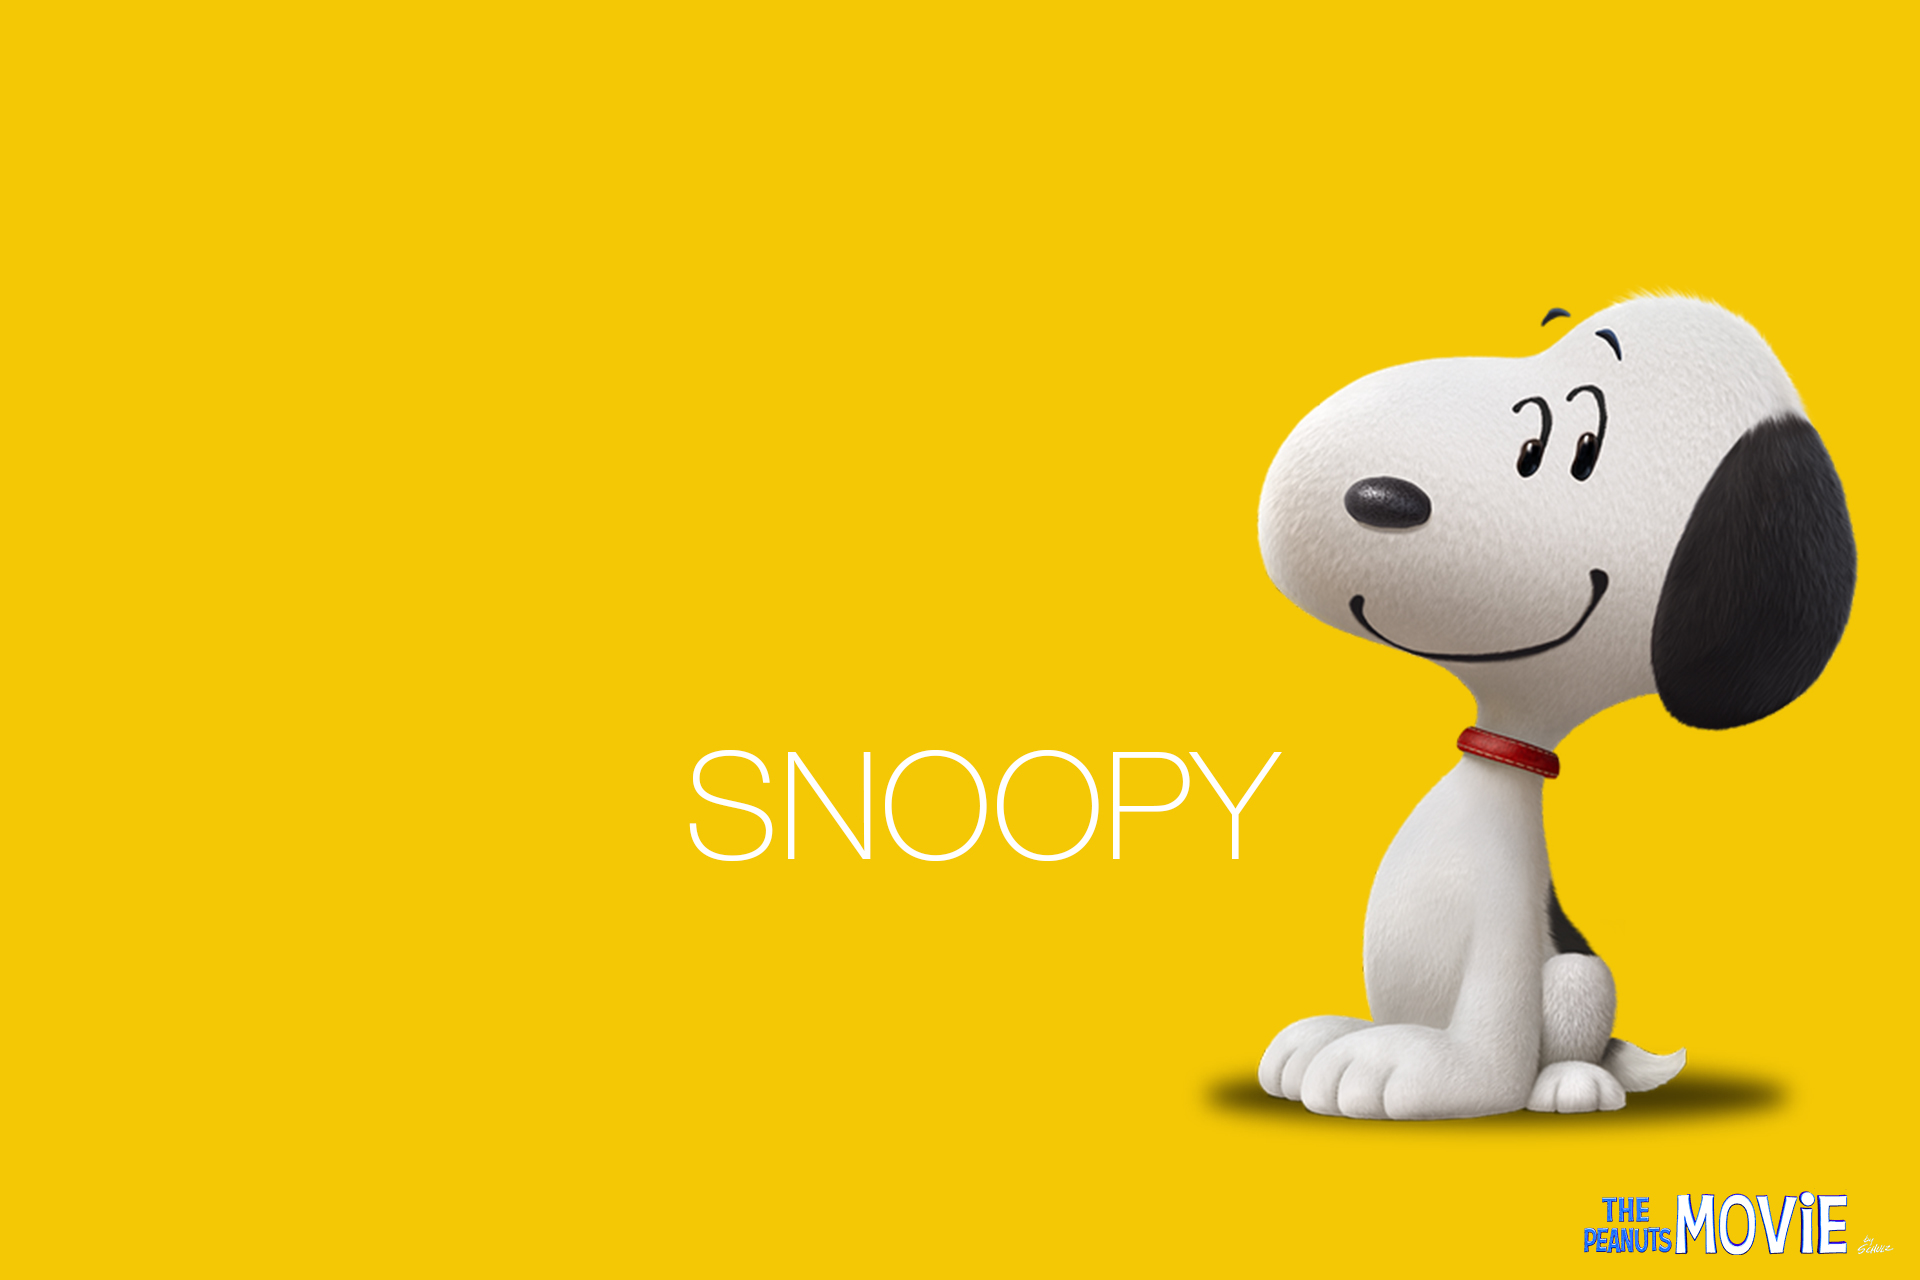 Snoopy Wallpaper Hd - Snoopy Imagenes Hd - HD Wallpaper 